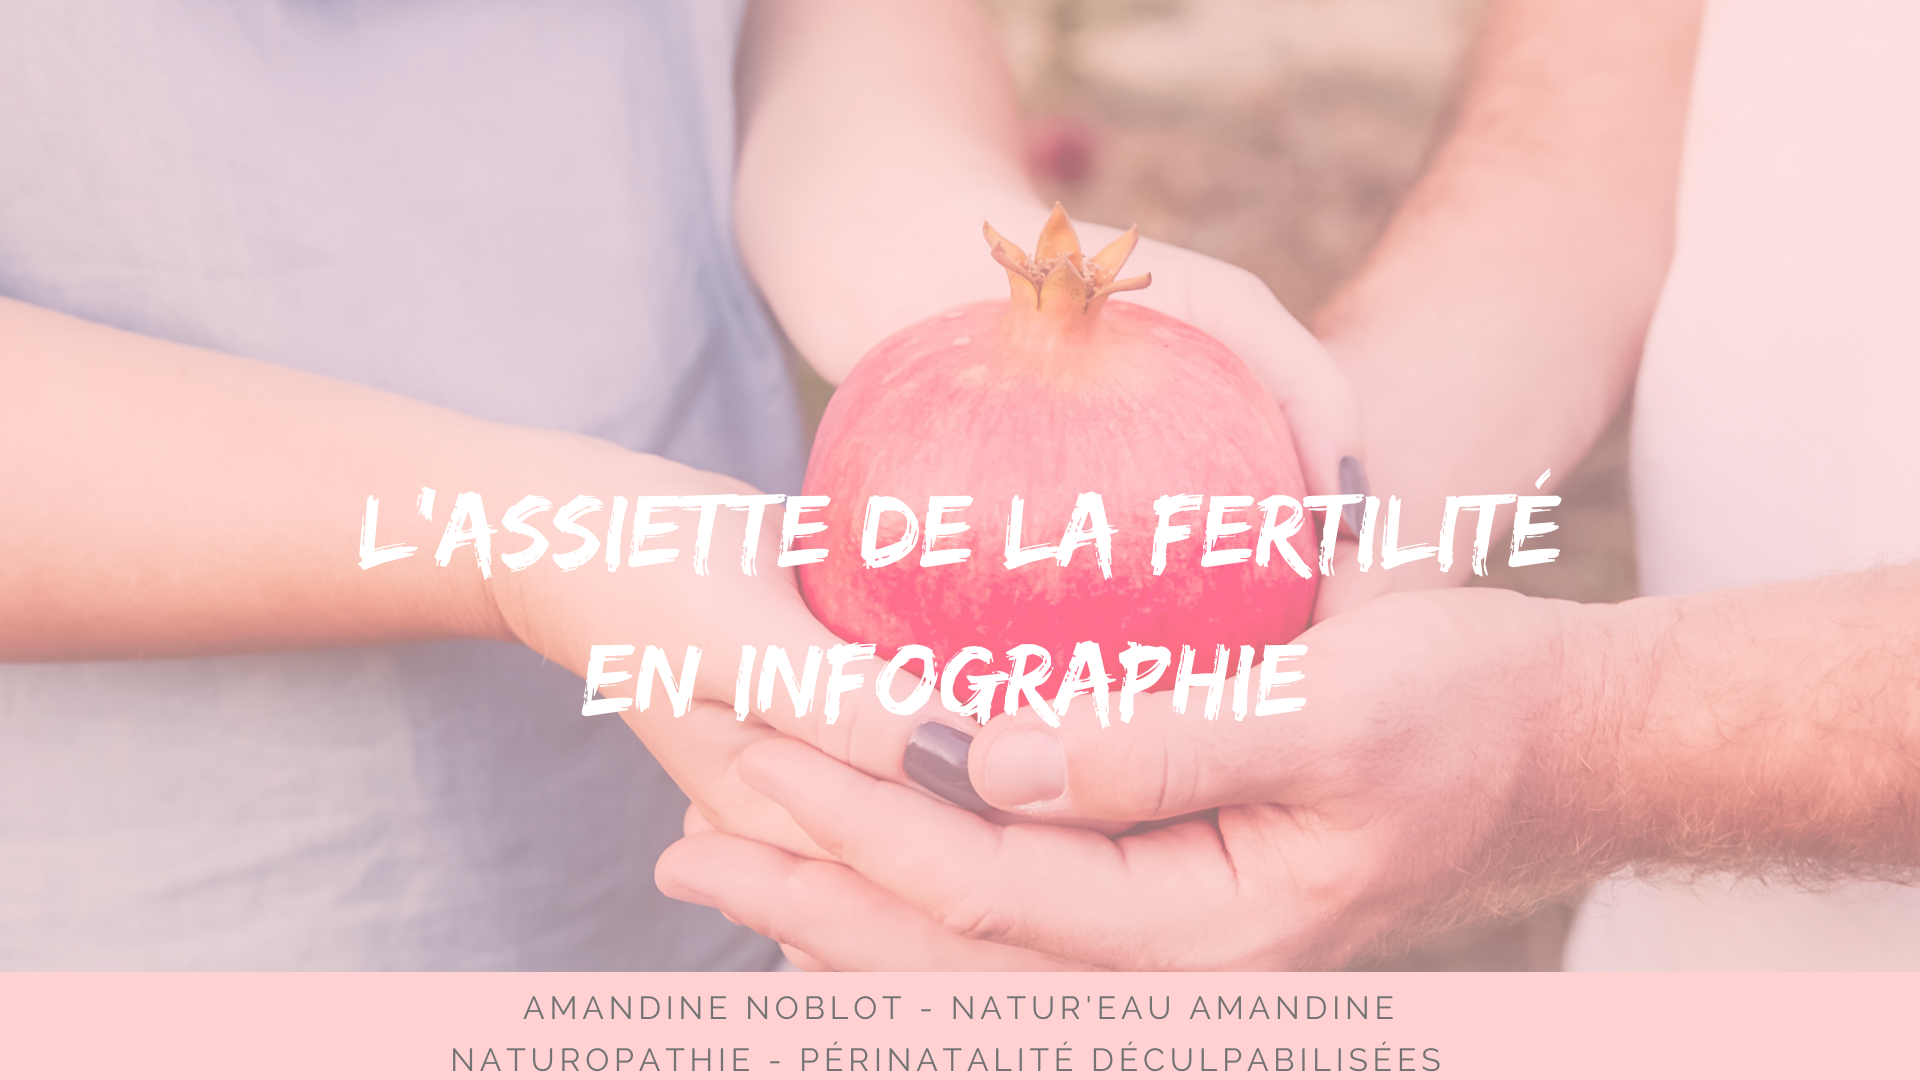 fertilité couple nutrition desirdenfant projet pma fiv bebe enfants parents naturopathie natureauamandine troyes aube france online 